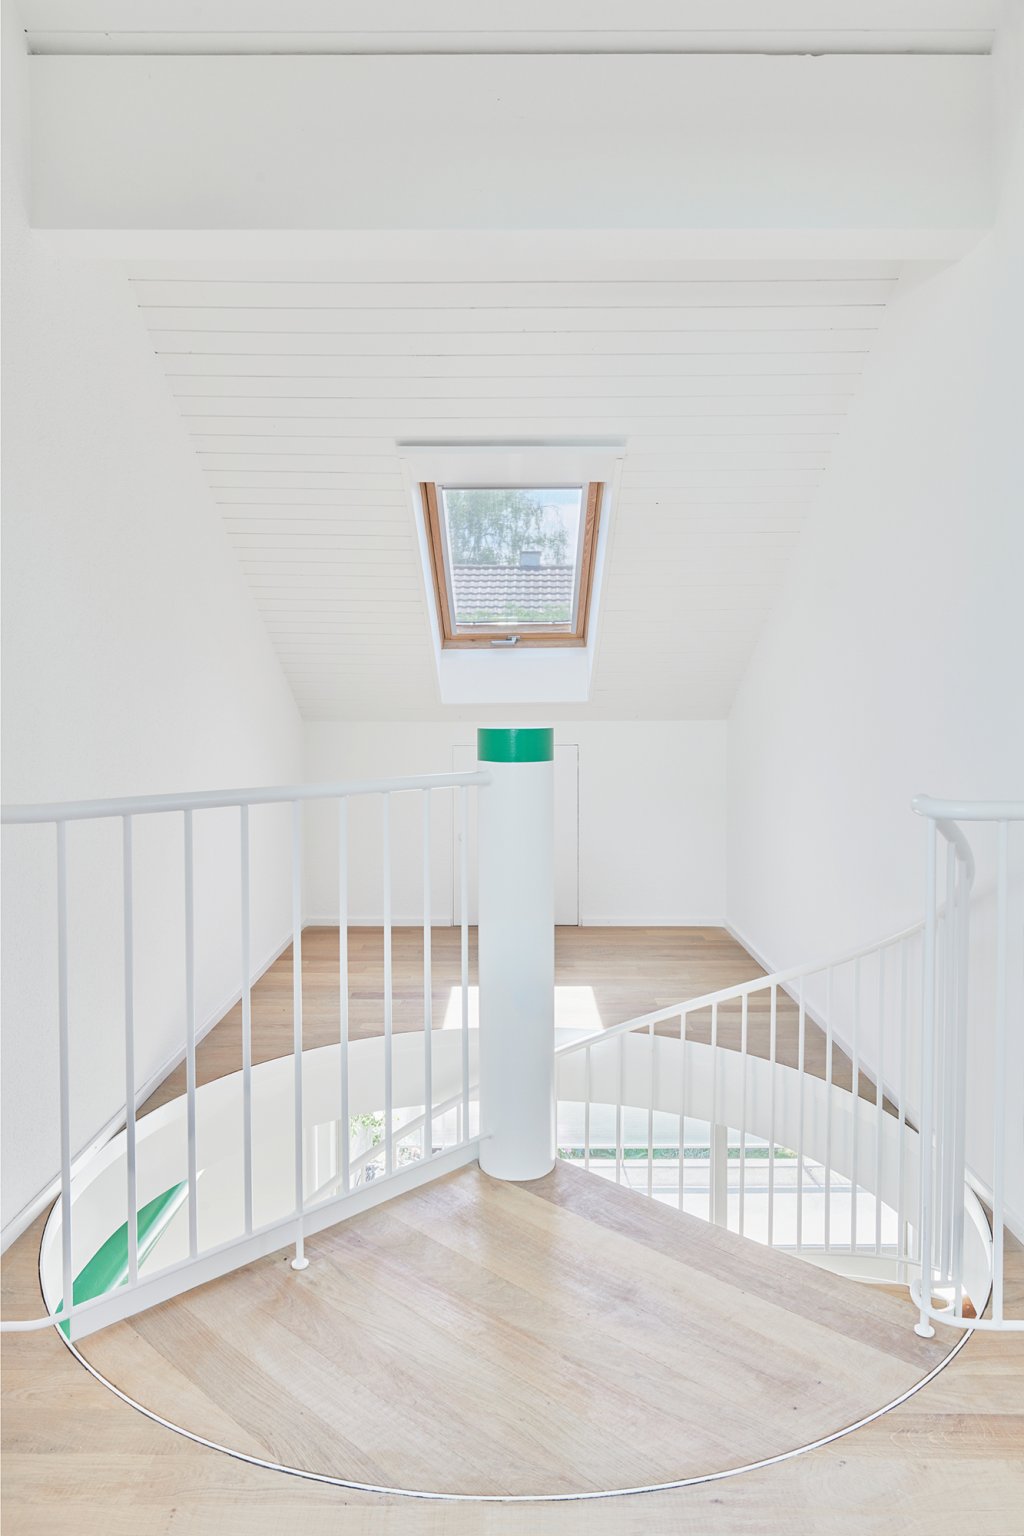 Hilbert Architektur Truwant Rodet Projekt Falkenstrasse Spiral Stairs